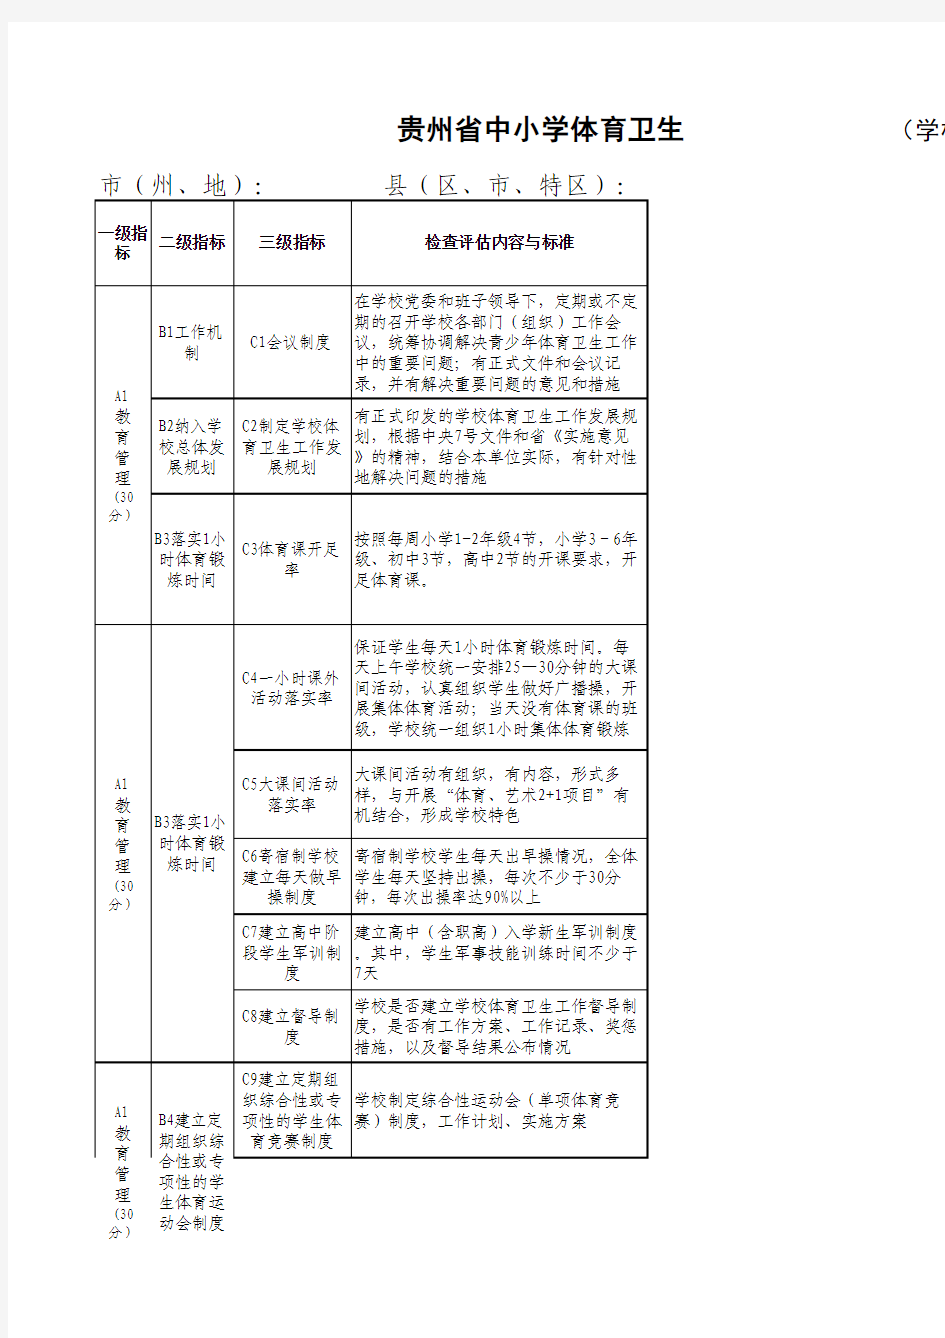 贵州省中小学体育工作督评表